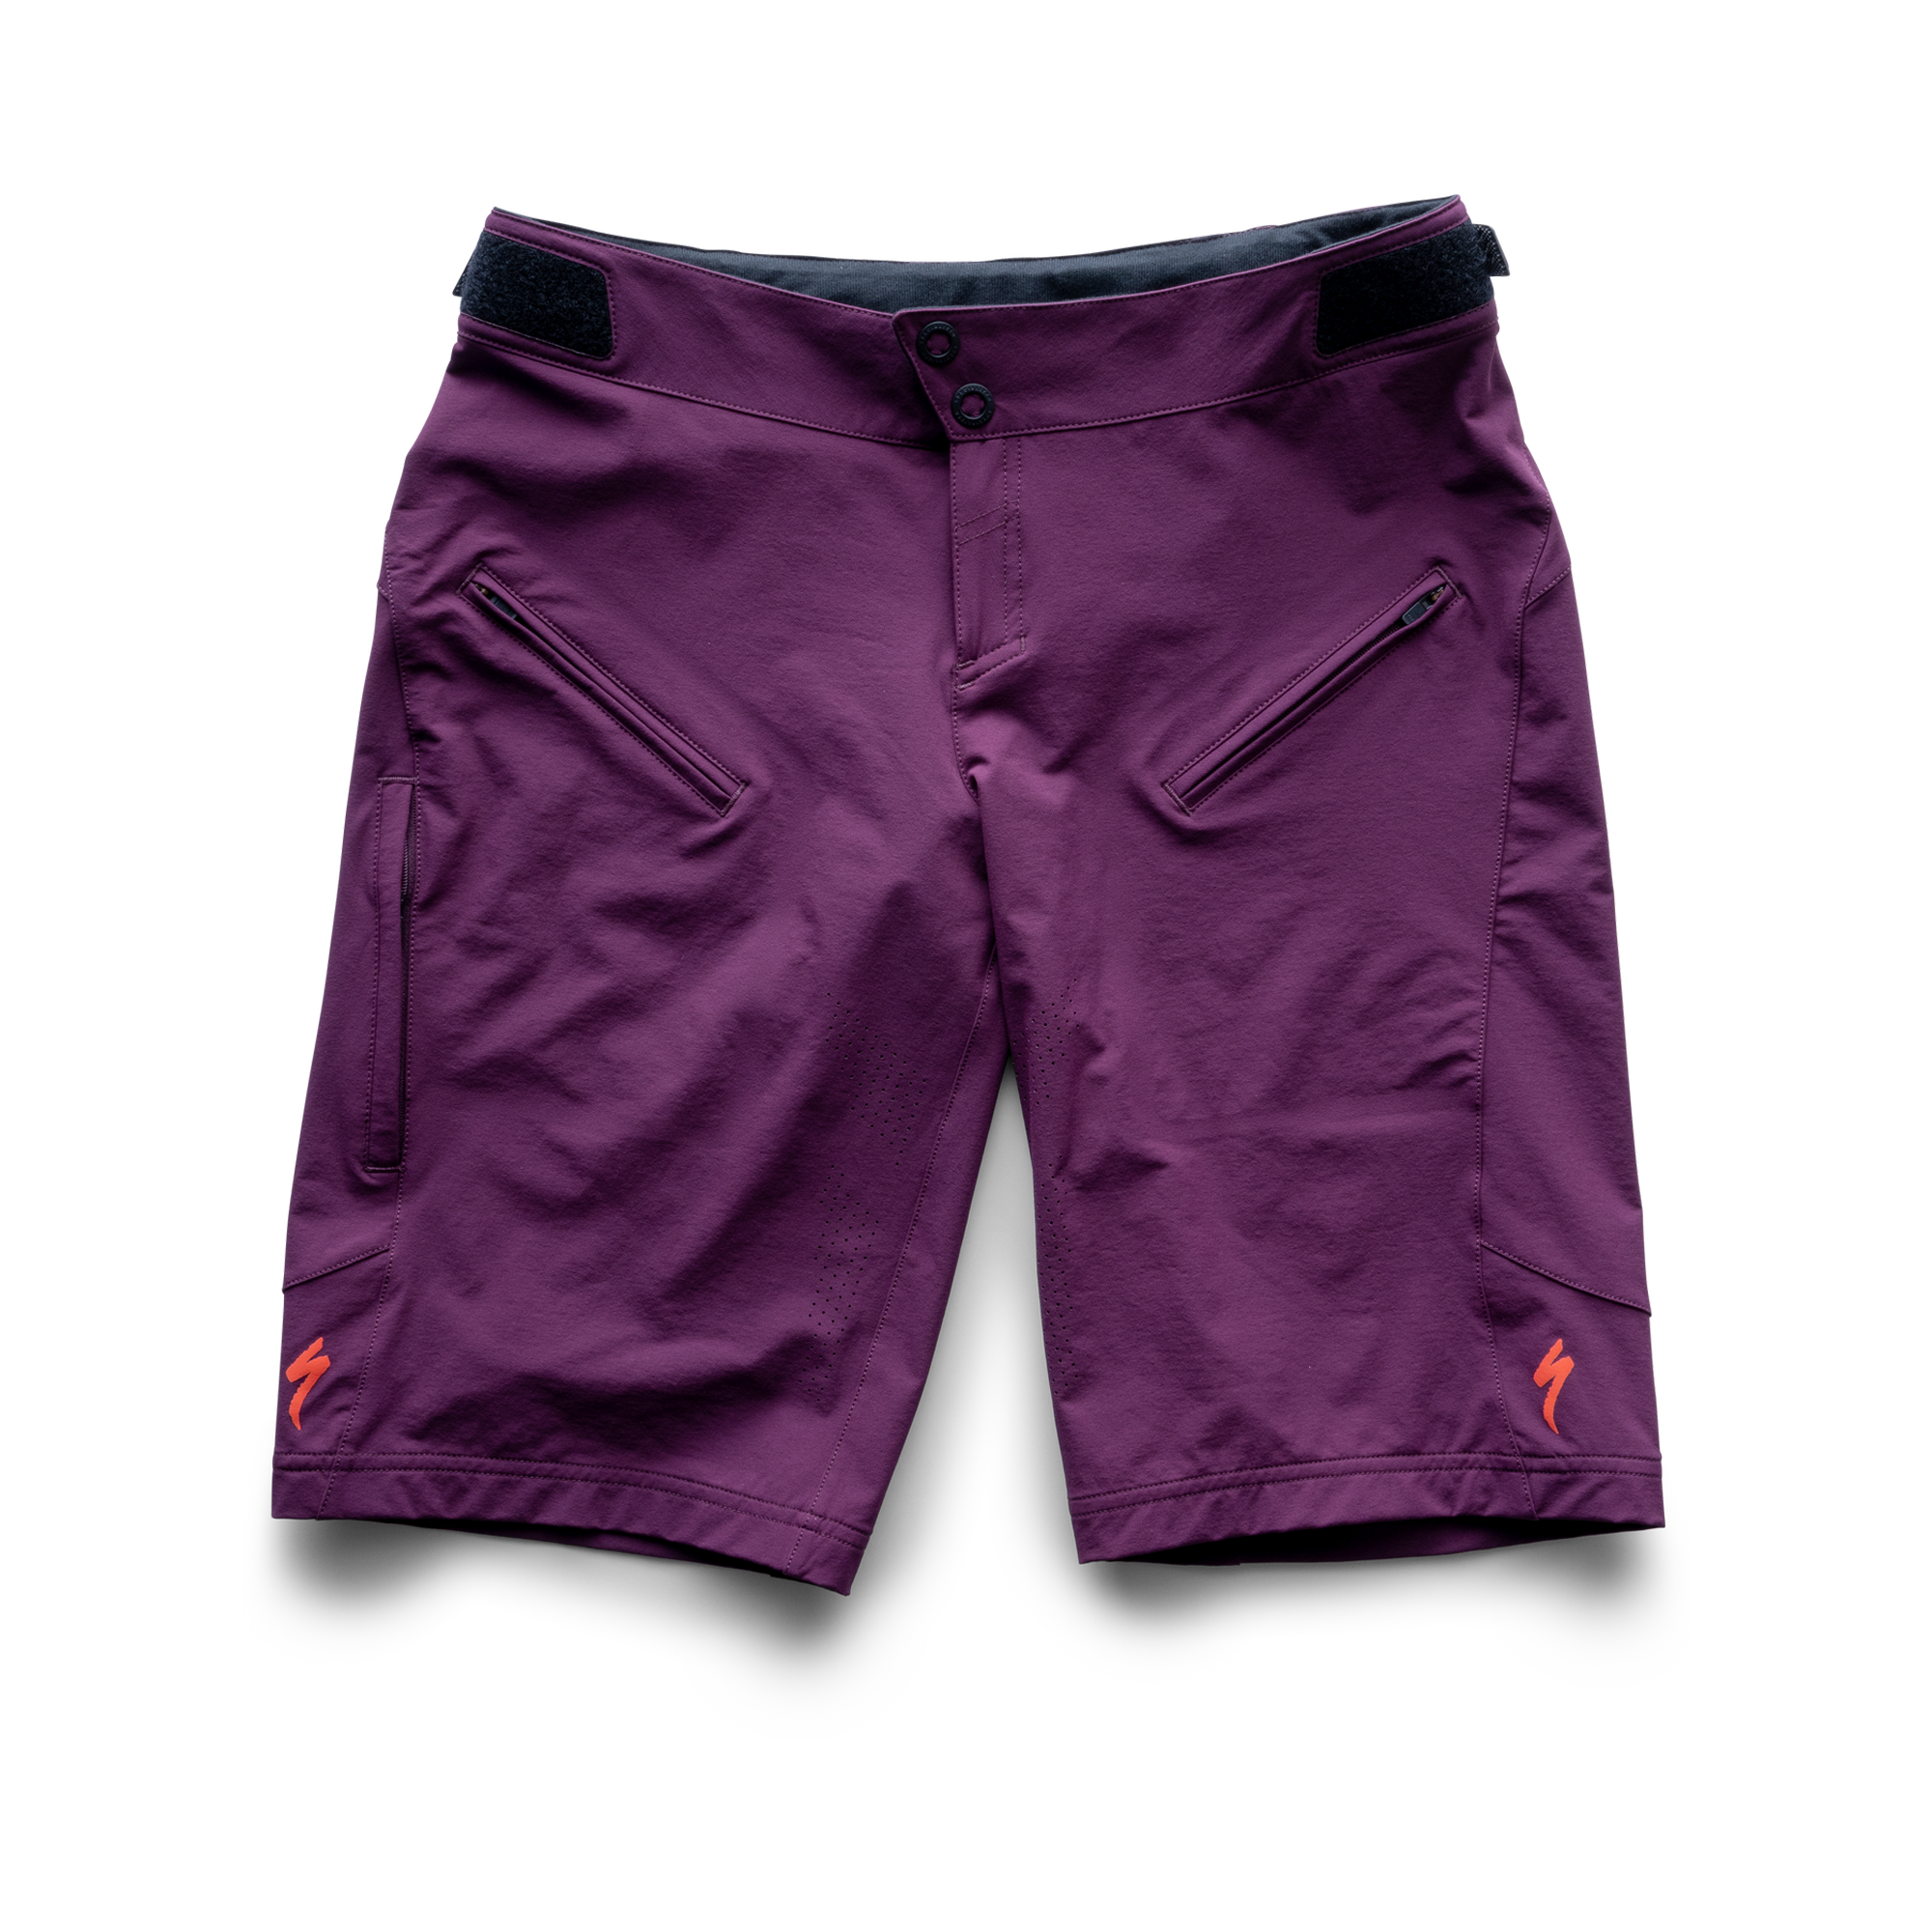 Andorra Pro Shorts